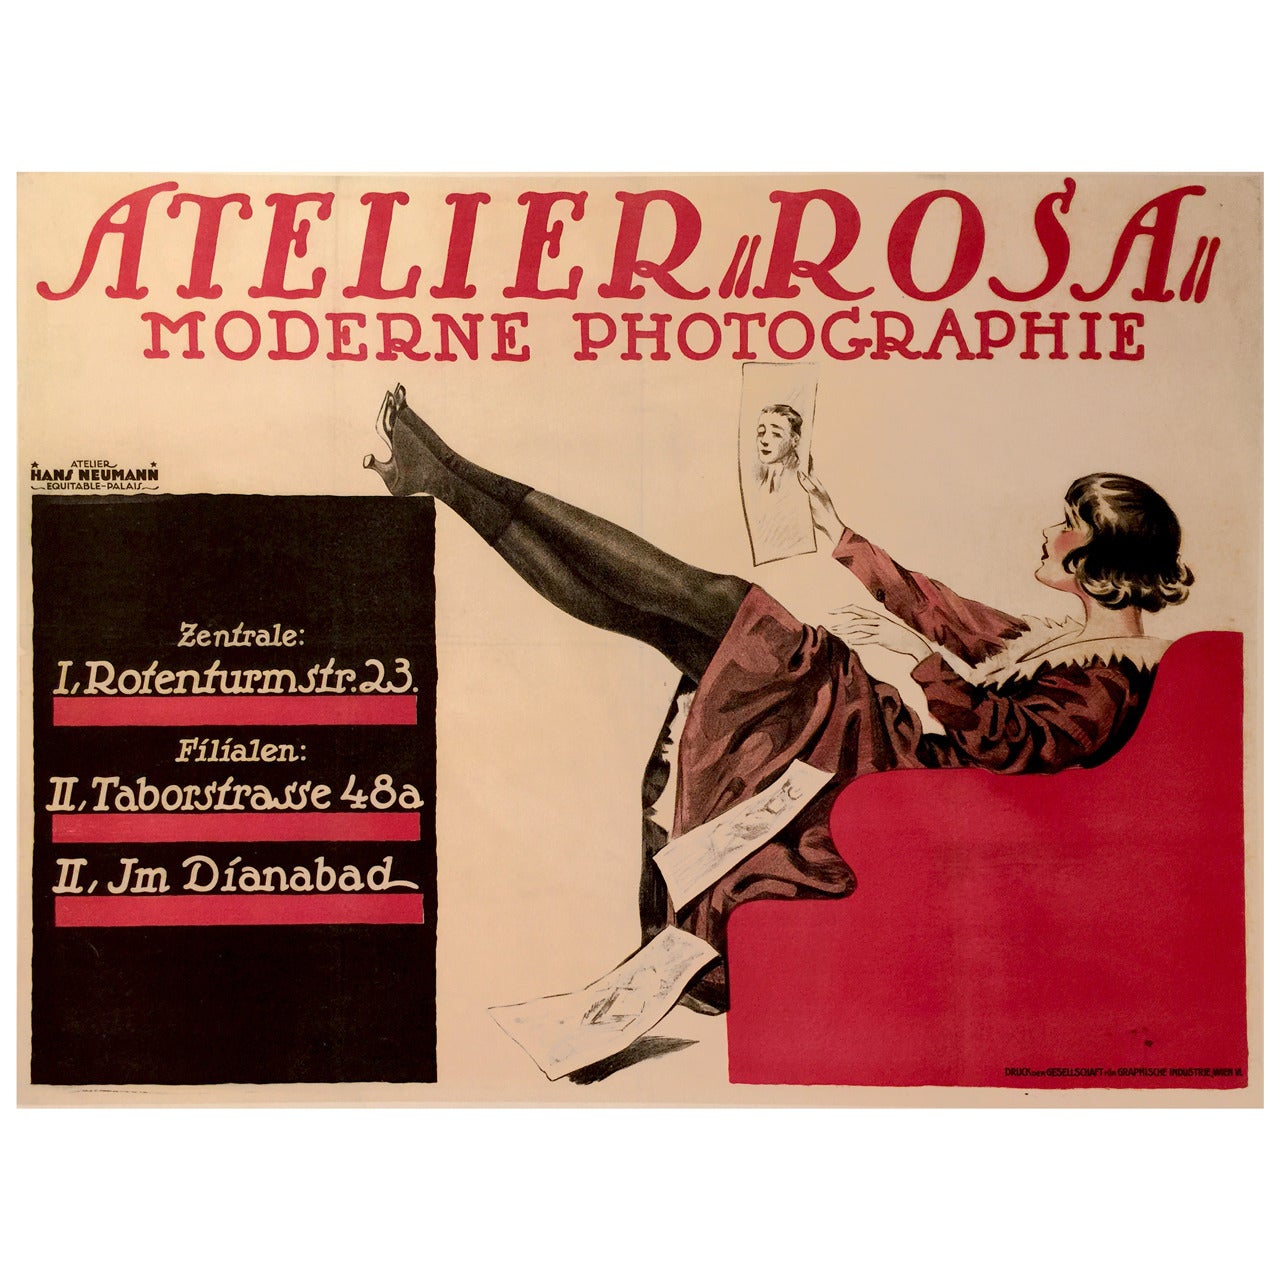 Austrian Art Nouveau Period Photography Studio Poster by Hans Neumann, 1919 For Sale